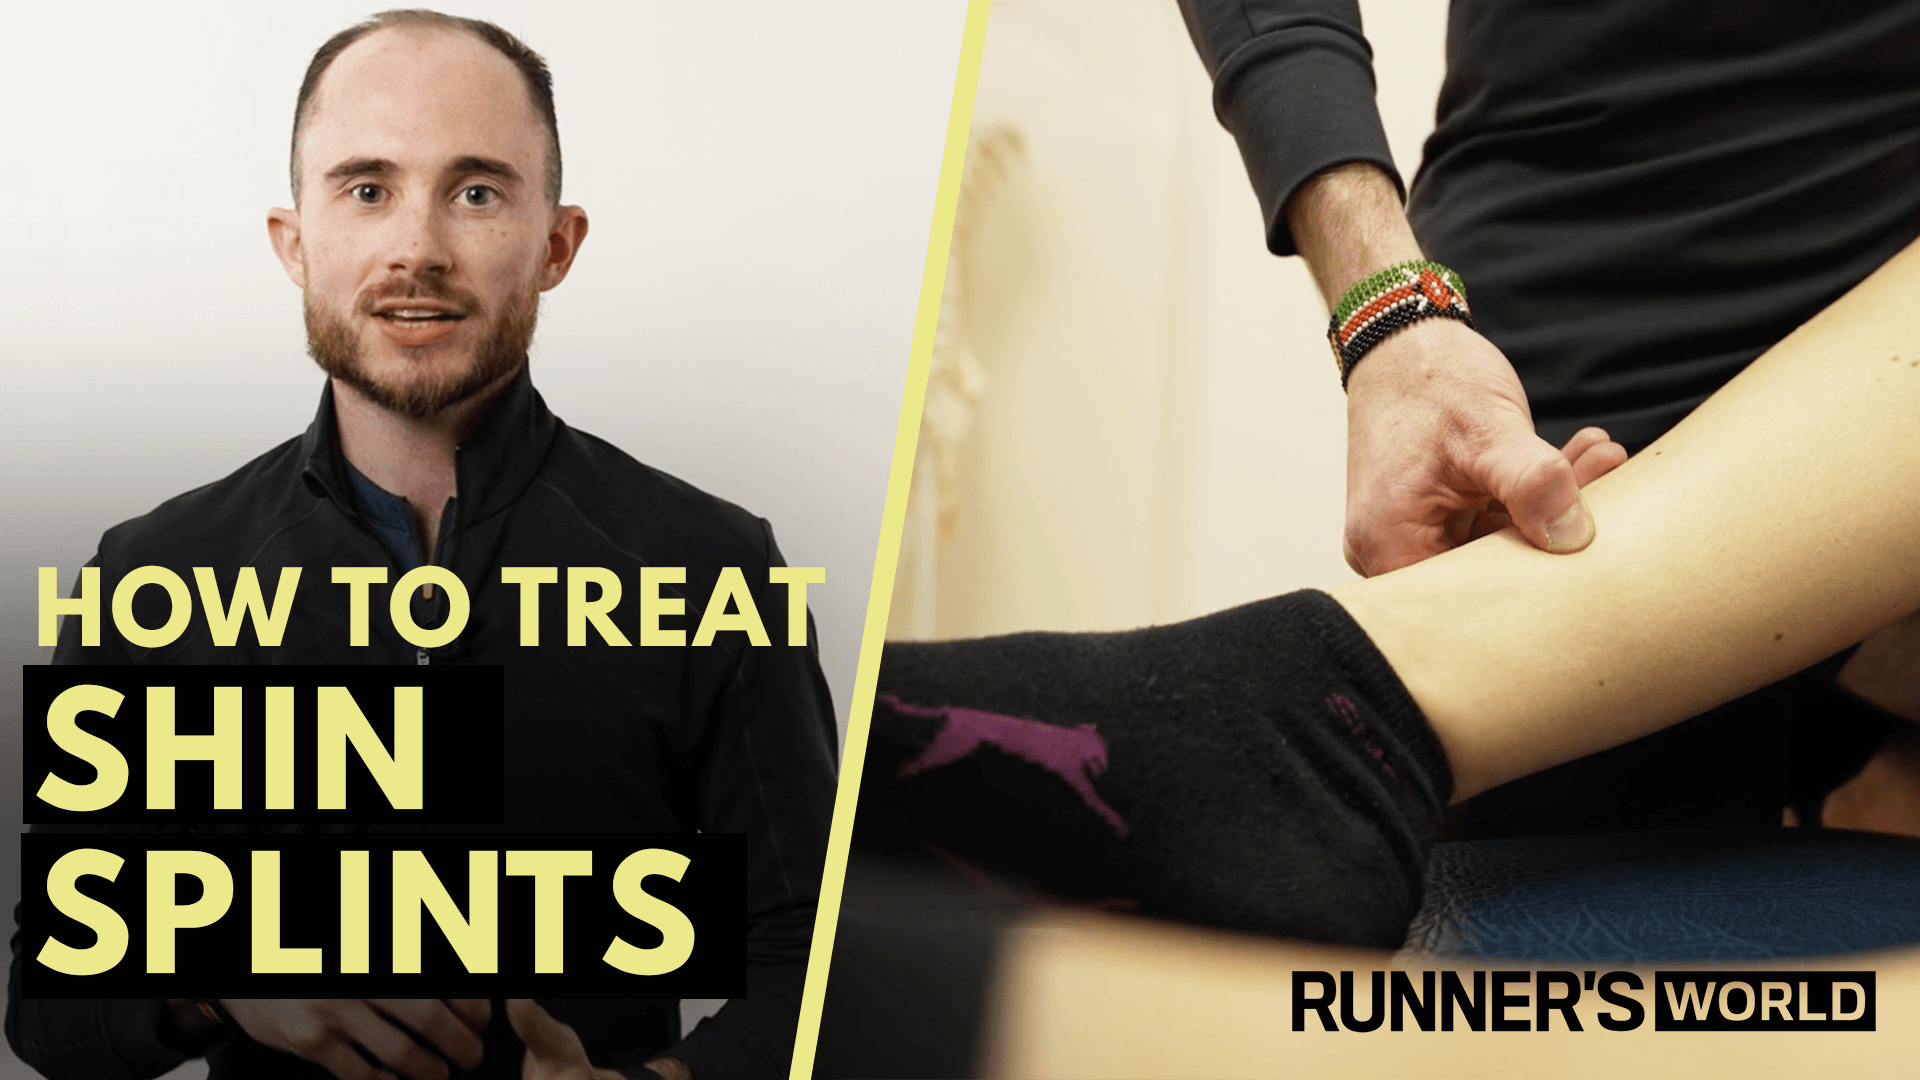 Shin splints treatment: How to overcome shin splints from ...